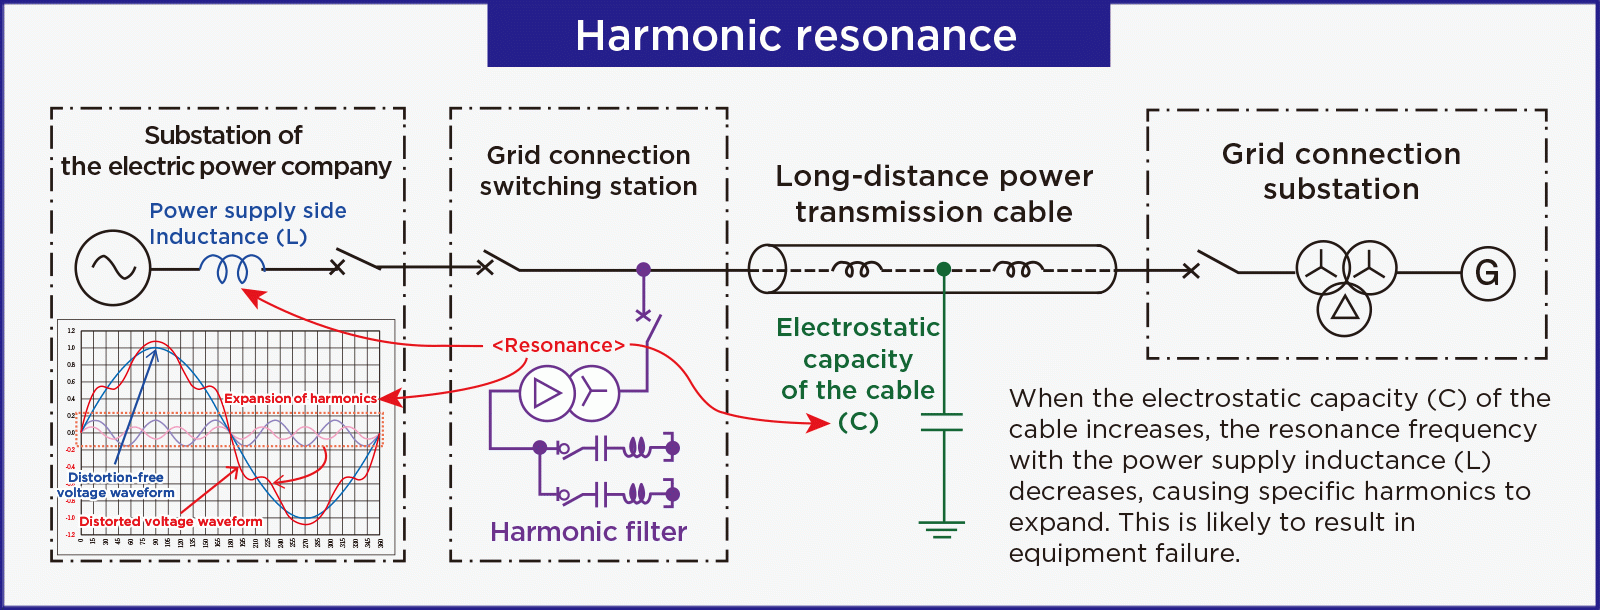 Harmonic resonance